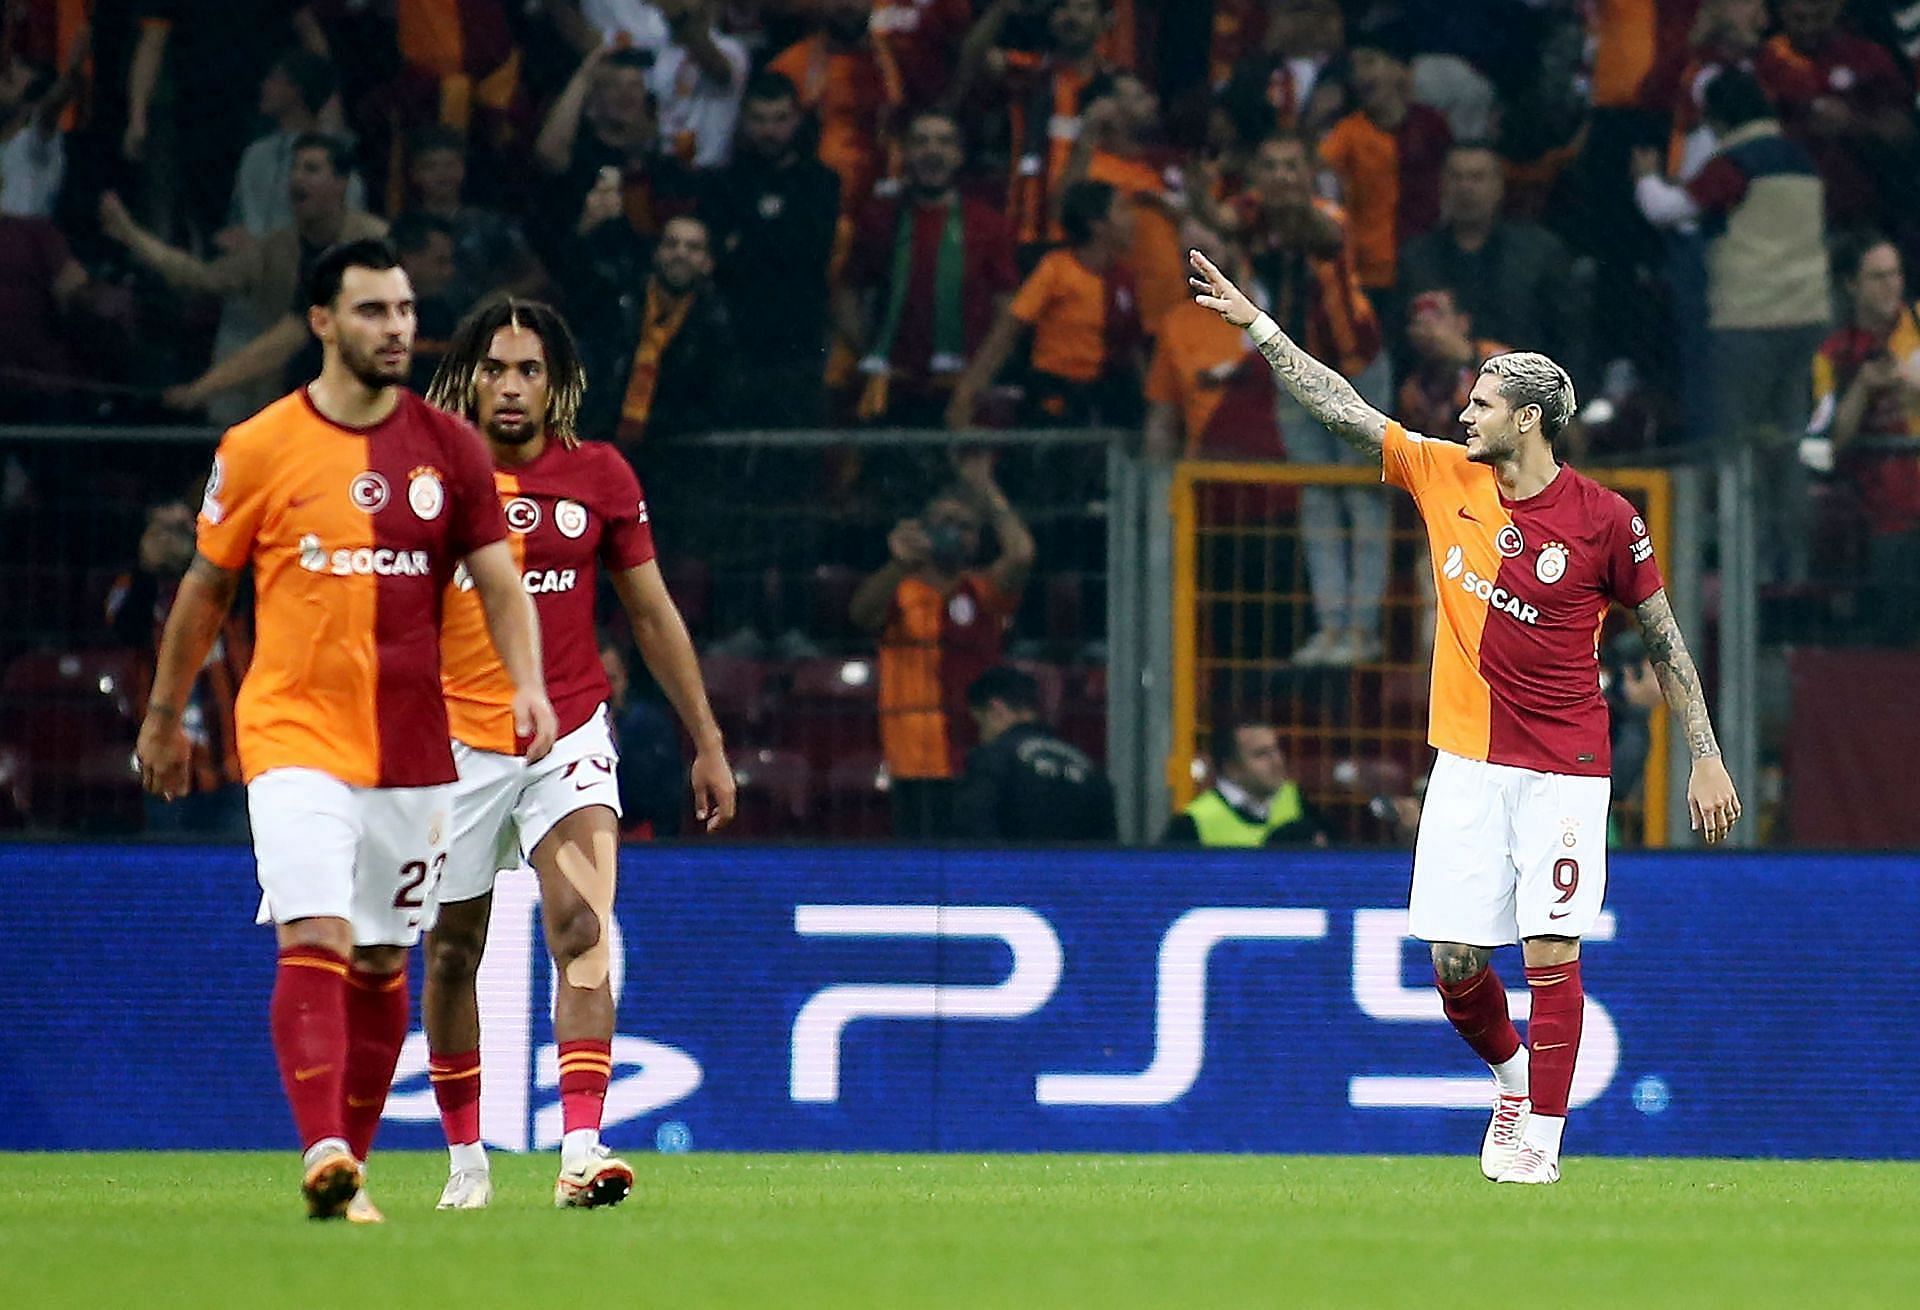 Galatasaray will host Pendikspor on Friday 